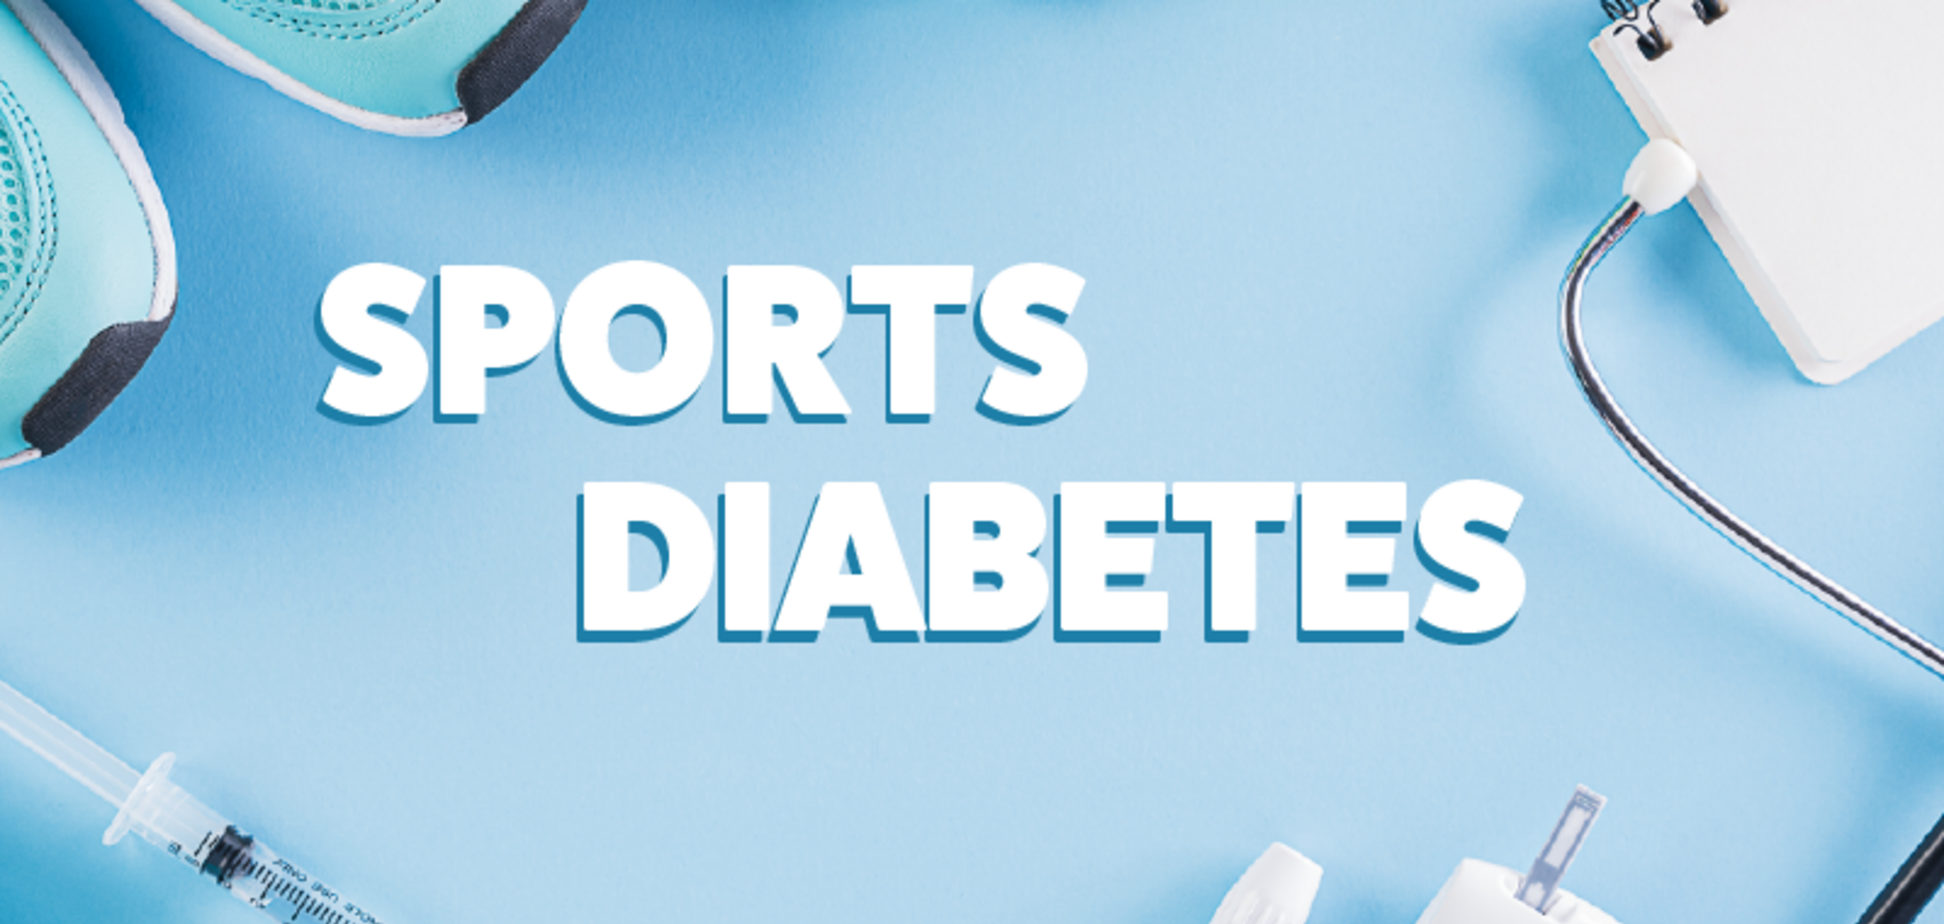 Діабет спорту не завада: тренування без ризику